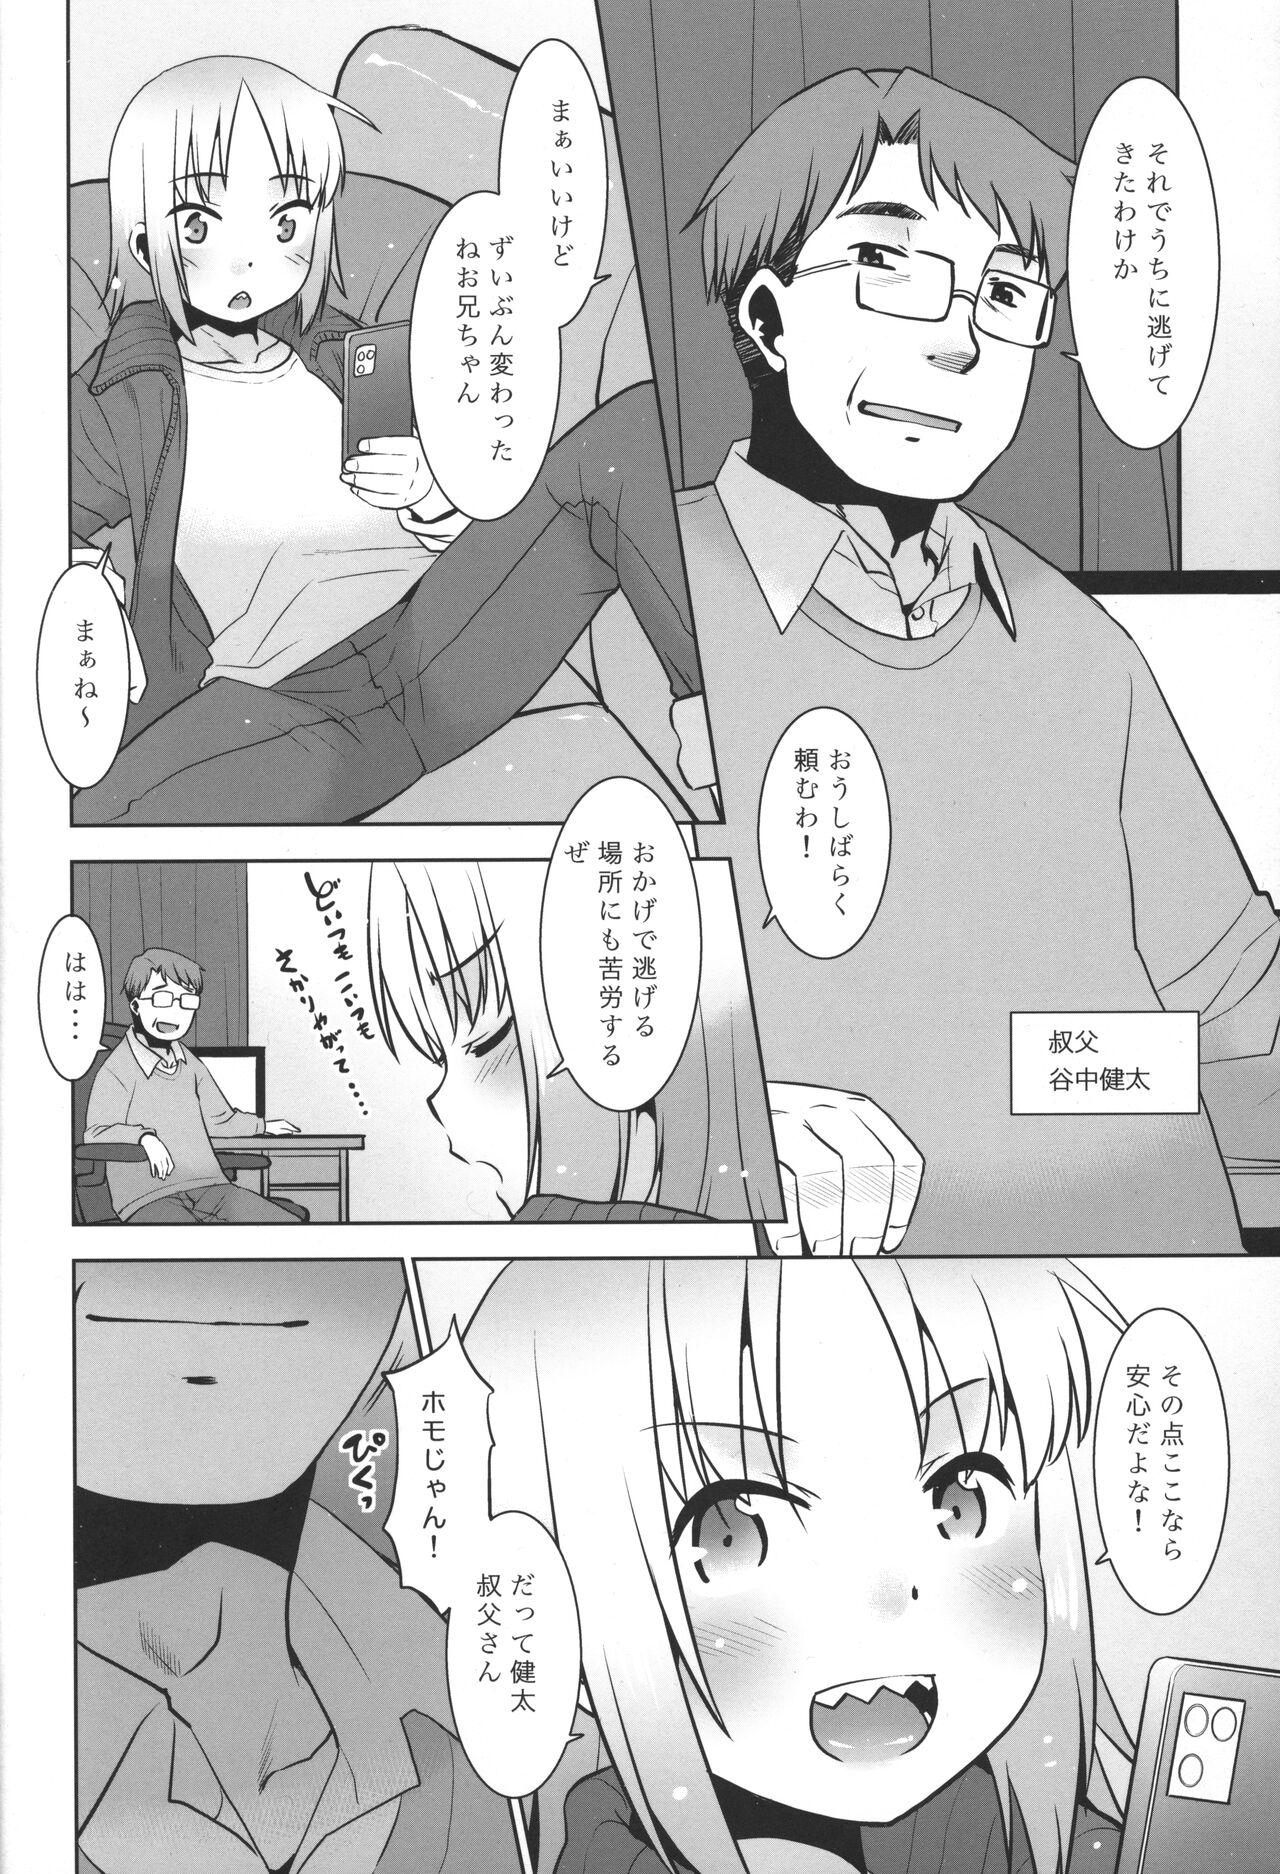 Butt Uchi no Aniki ga Onna no ko ni natta kara Minna de Mawasou ze! 2 - Original Gaypawn - Page 5